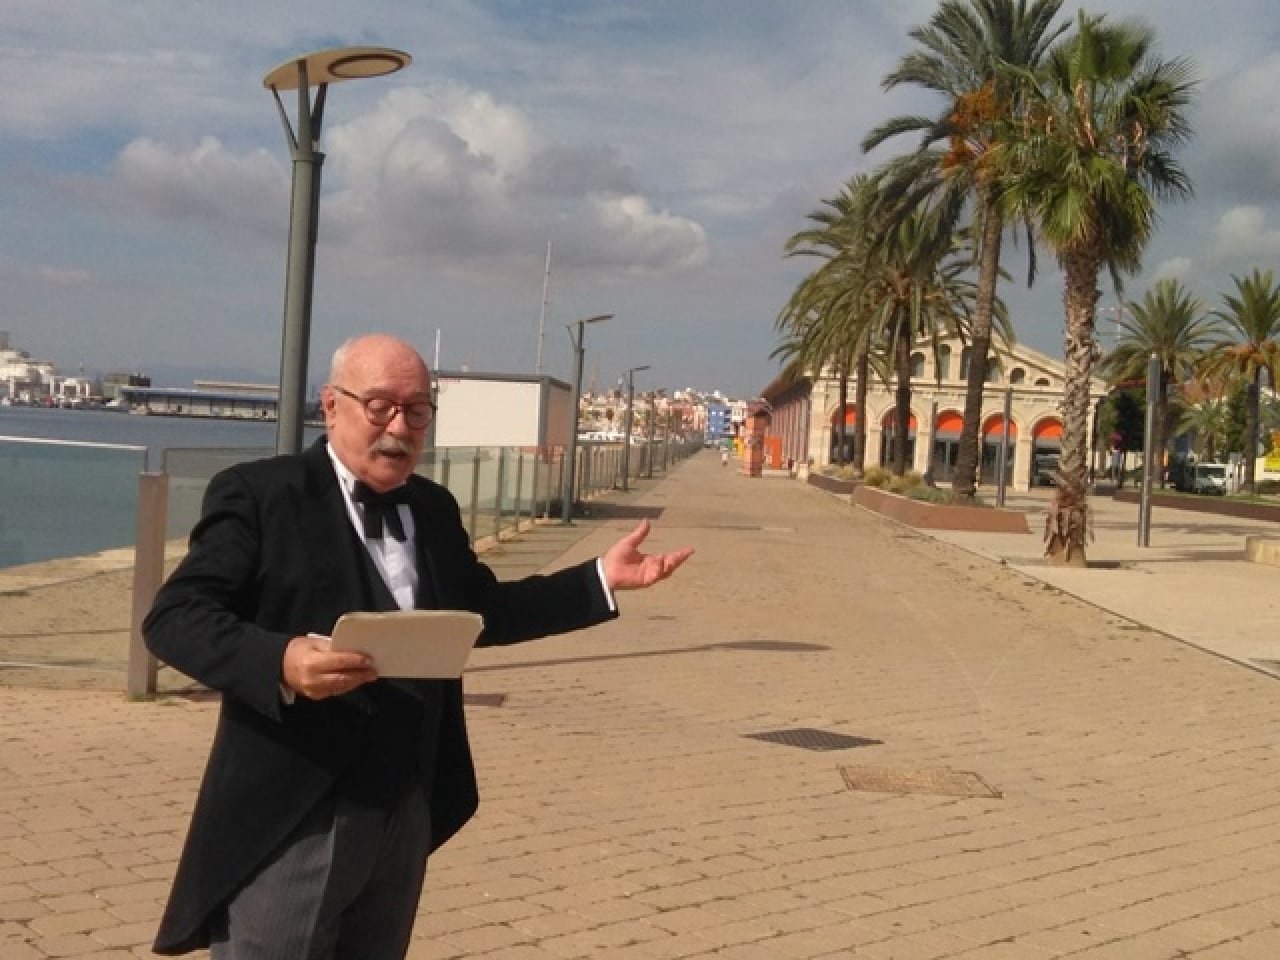 El dissabte 11 i el diumenge 12 de juny s’organitza la visita teatralitzada: ‘Projectant el port amb l’enginyer Bellido’, un recorregut per la història portuària